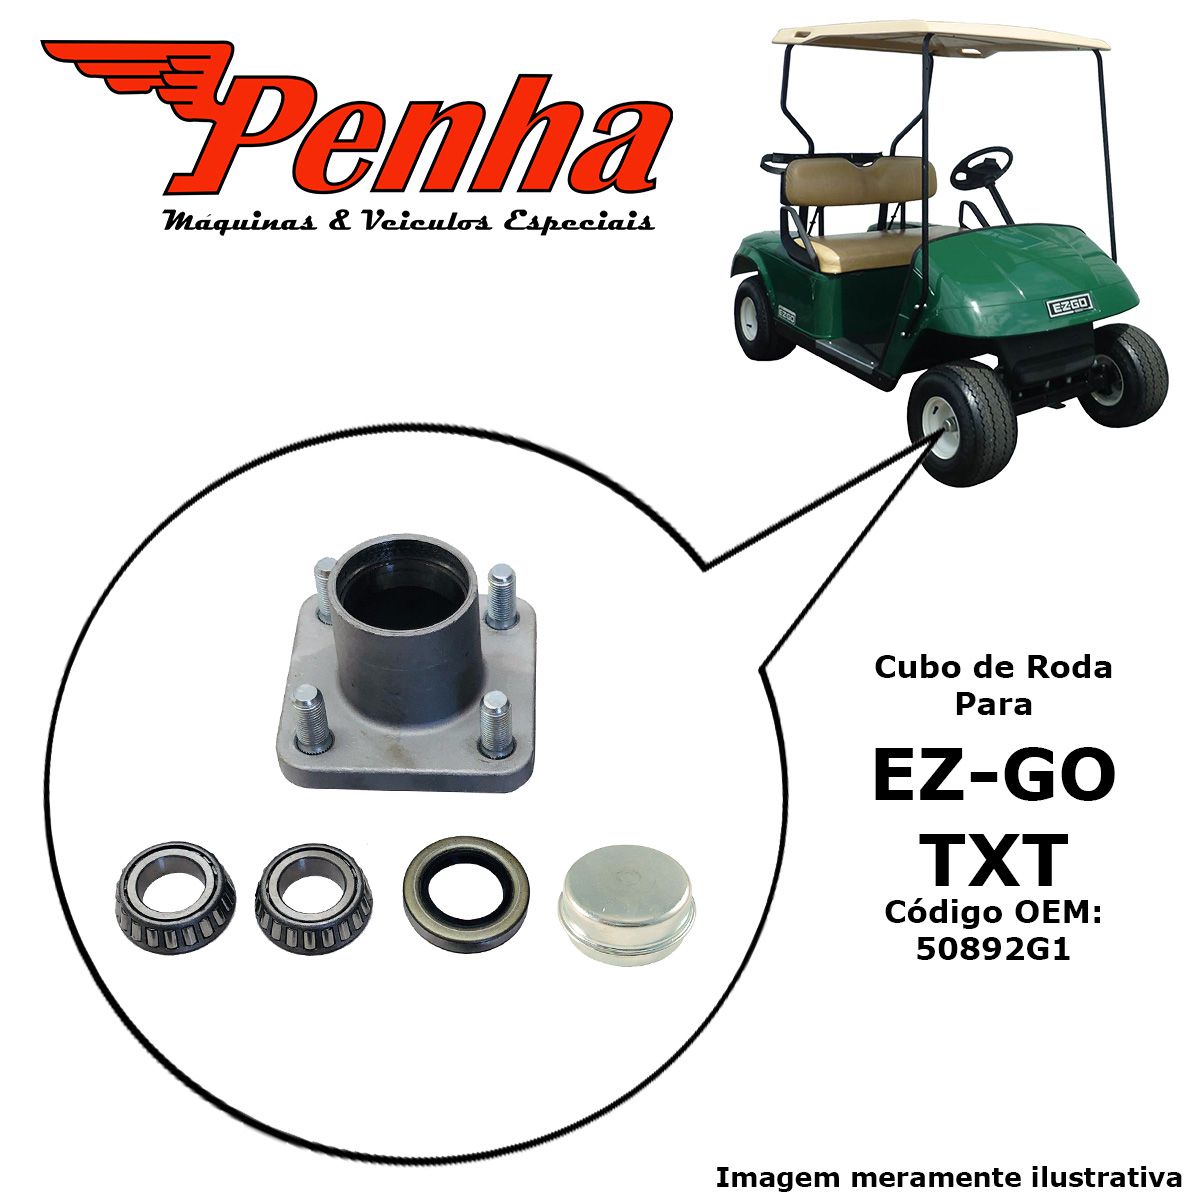 Cubo de roda completo para carrinho de golfe EZ-GO TXT 